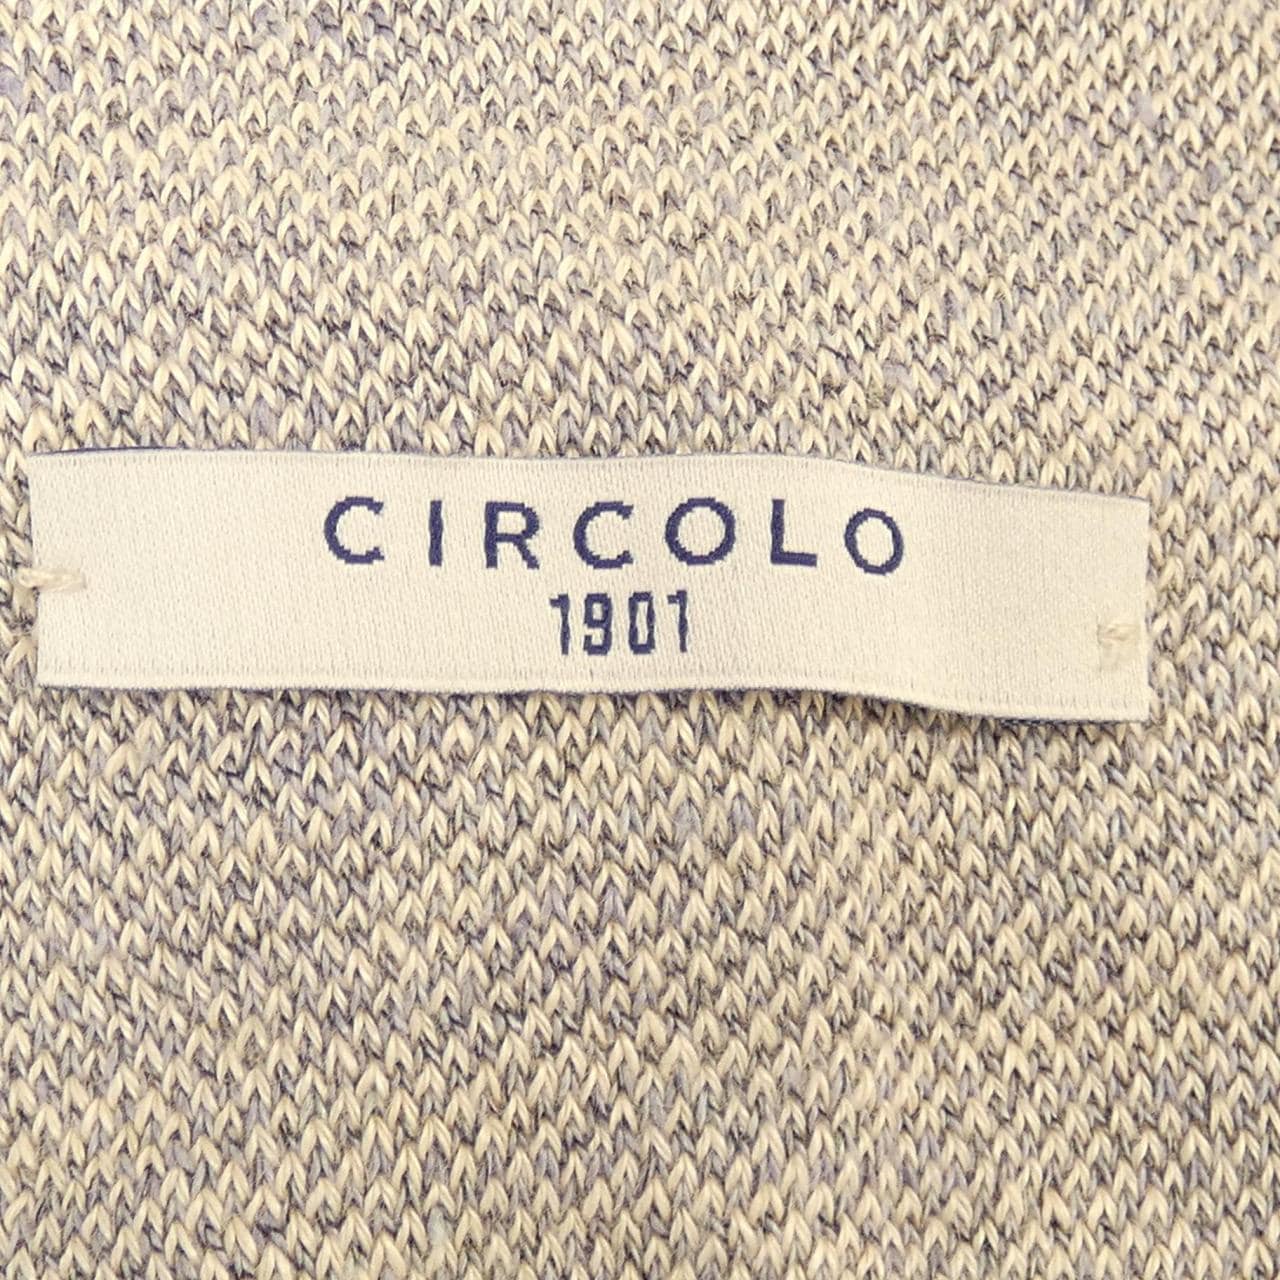 Circolo 1901 CIRCOLO 1901 jacket